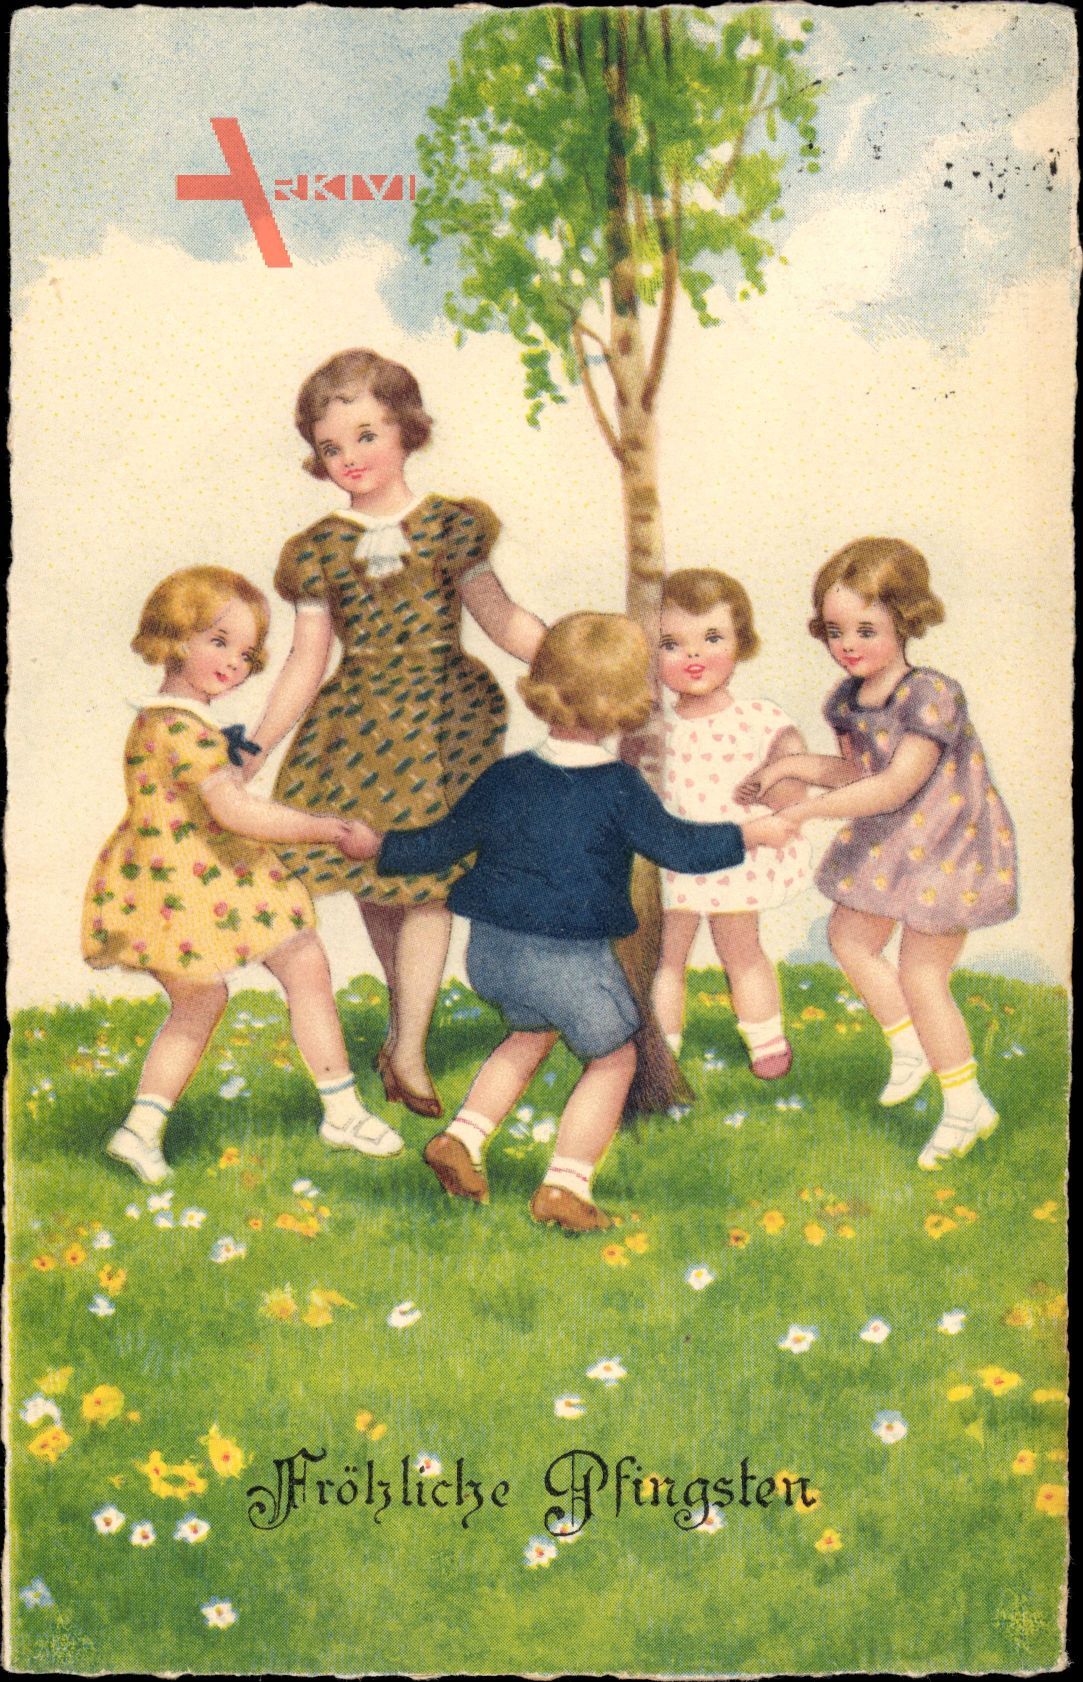 Glückwunsch Pfingsten, Kinder tanzen um einen Baum herum